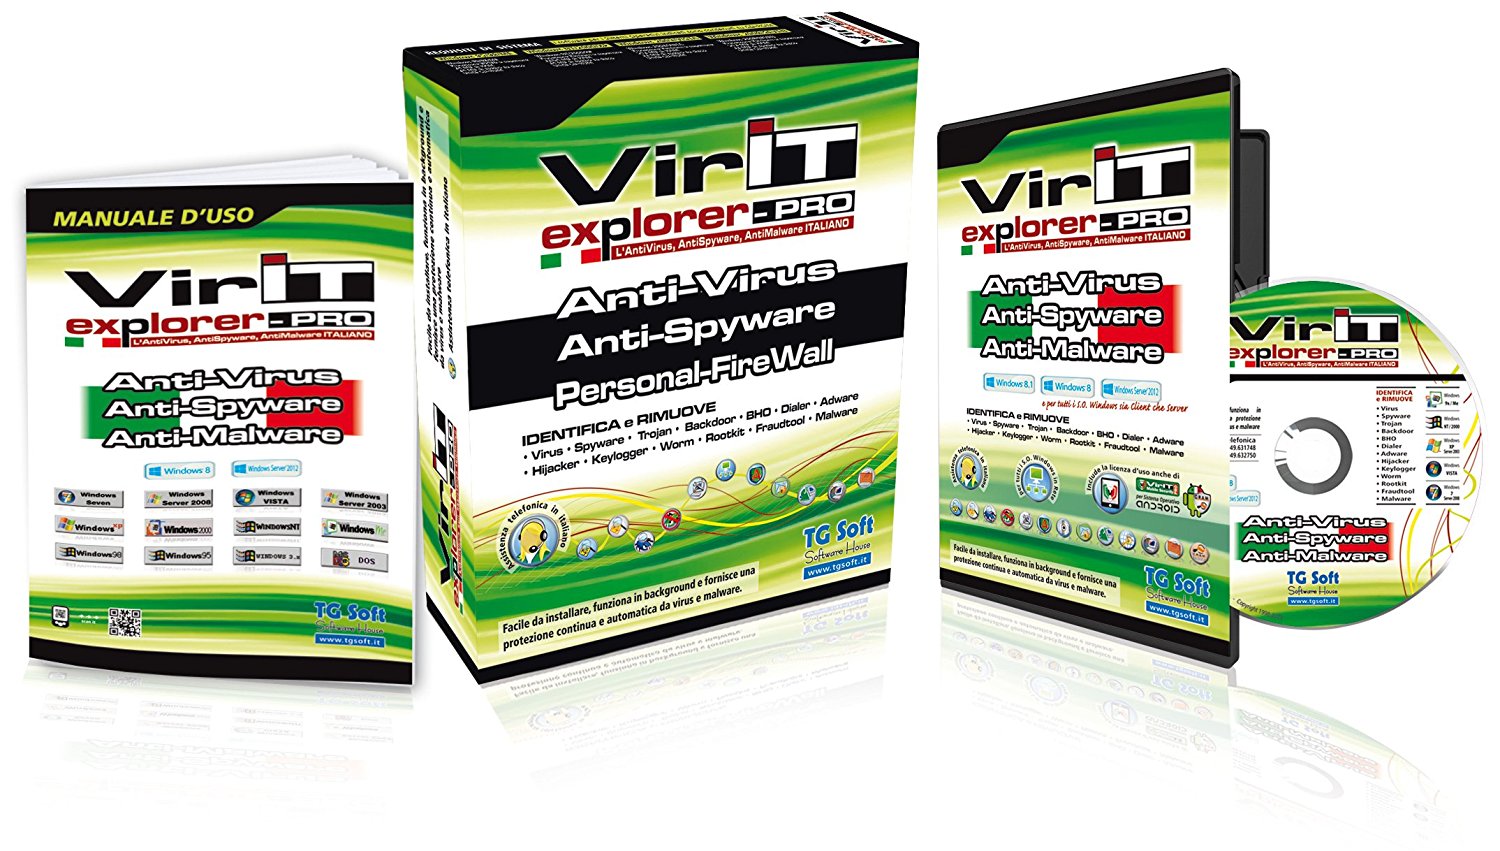 VirIT antivirus